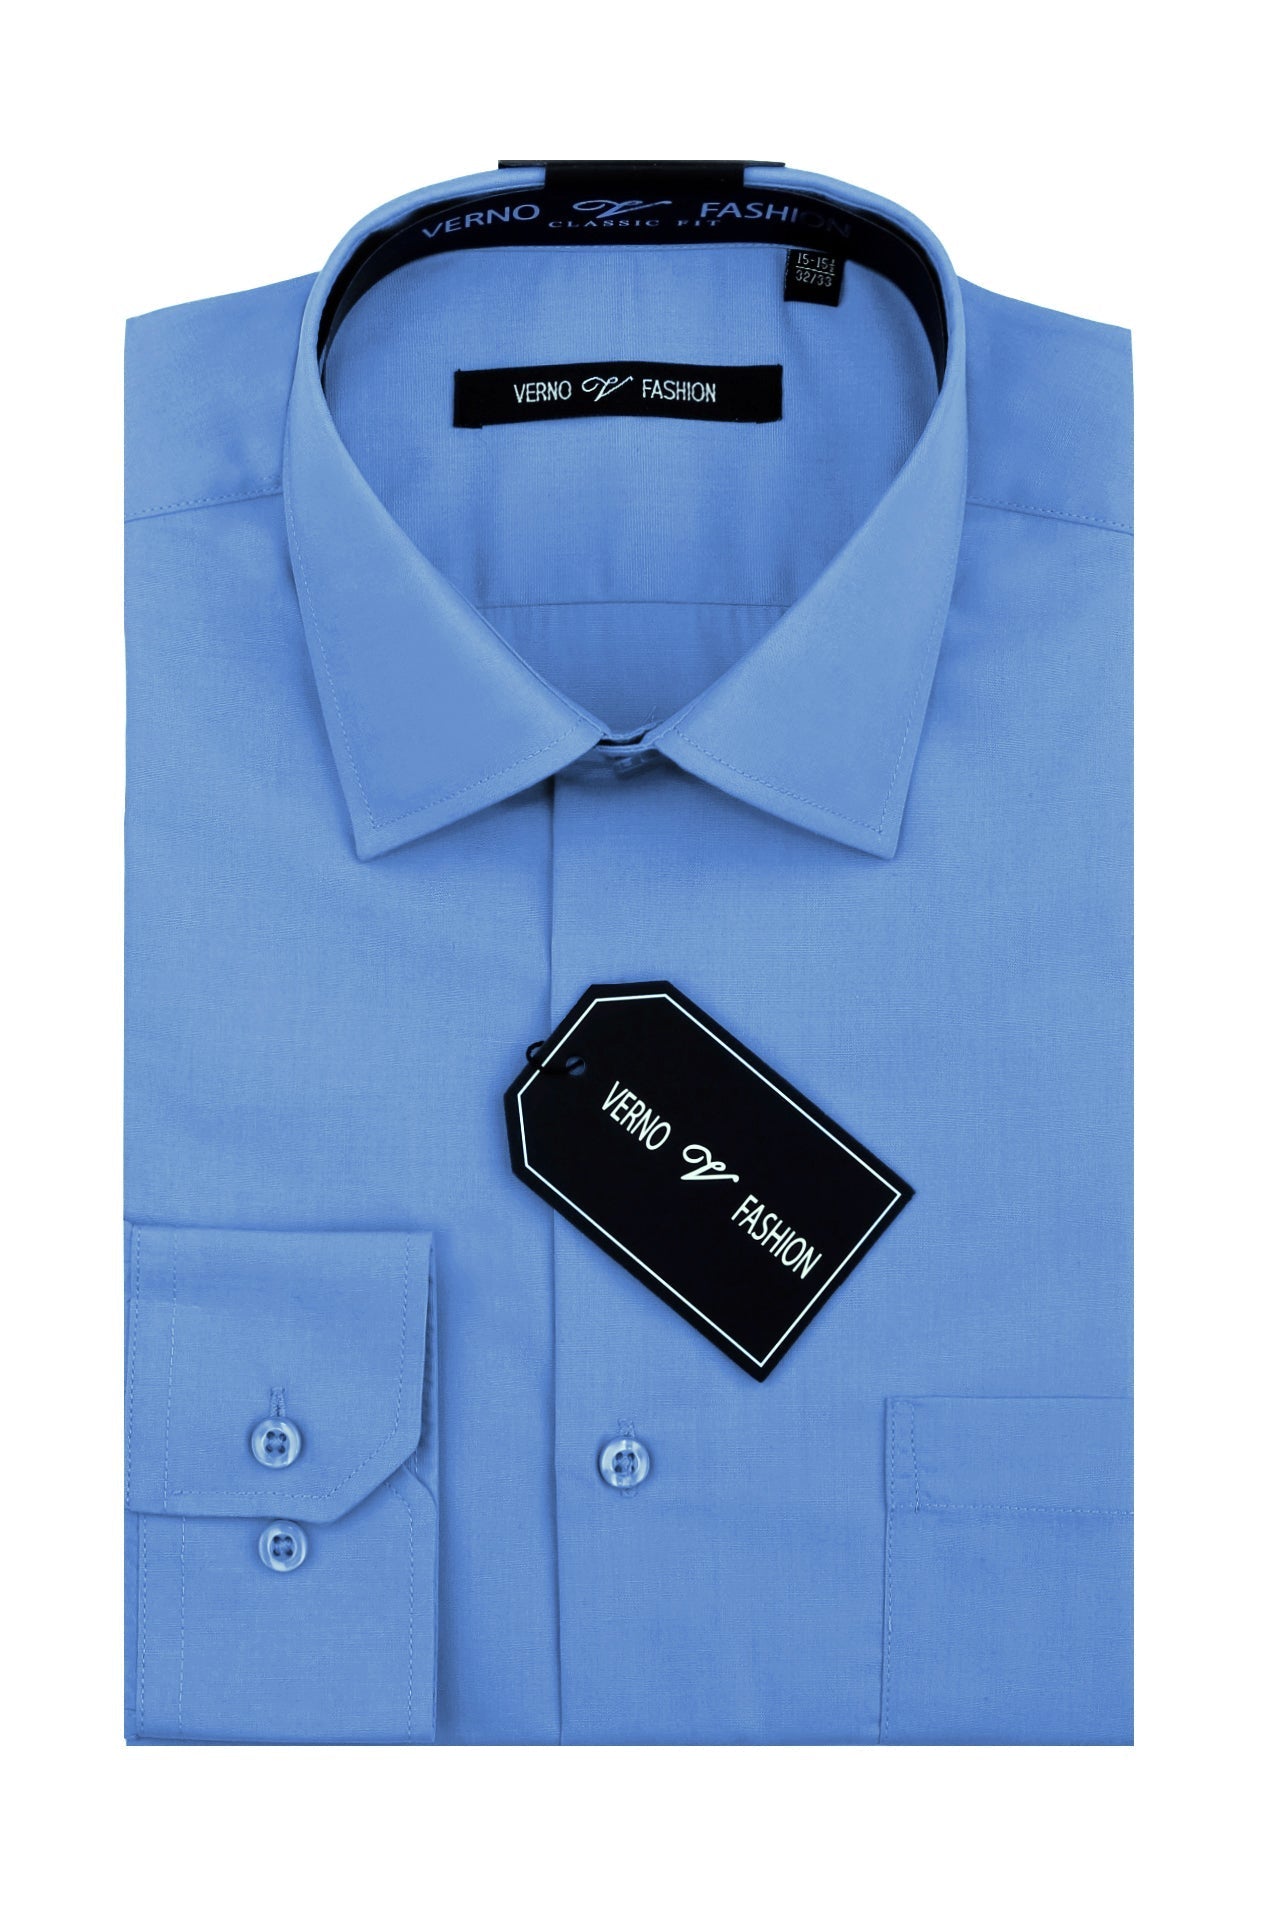 "Cotton Blend Regular Fit Men's Dress Shirt - Light Blue"